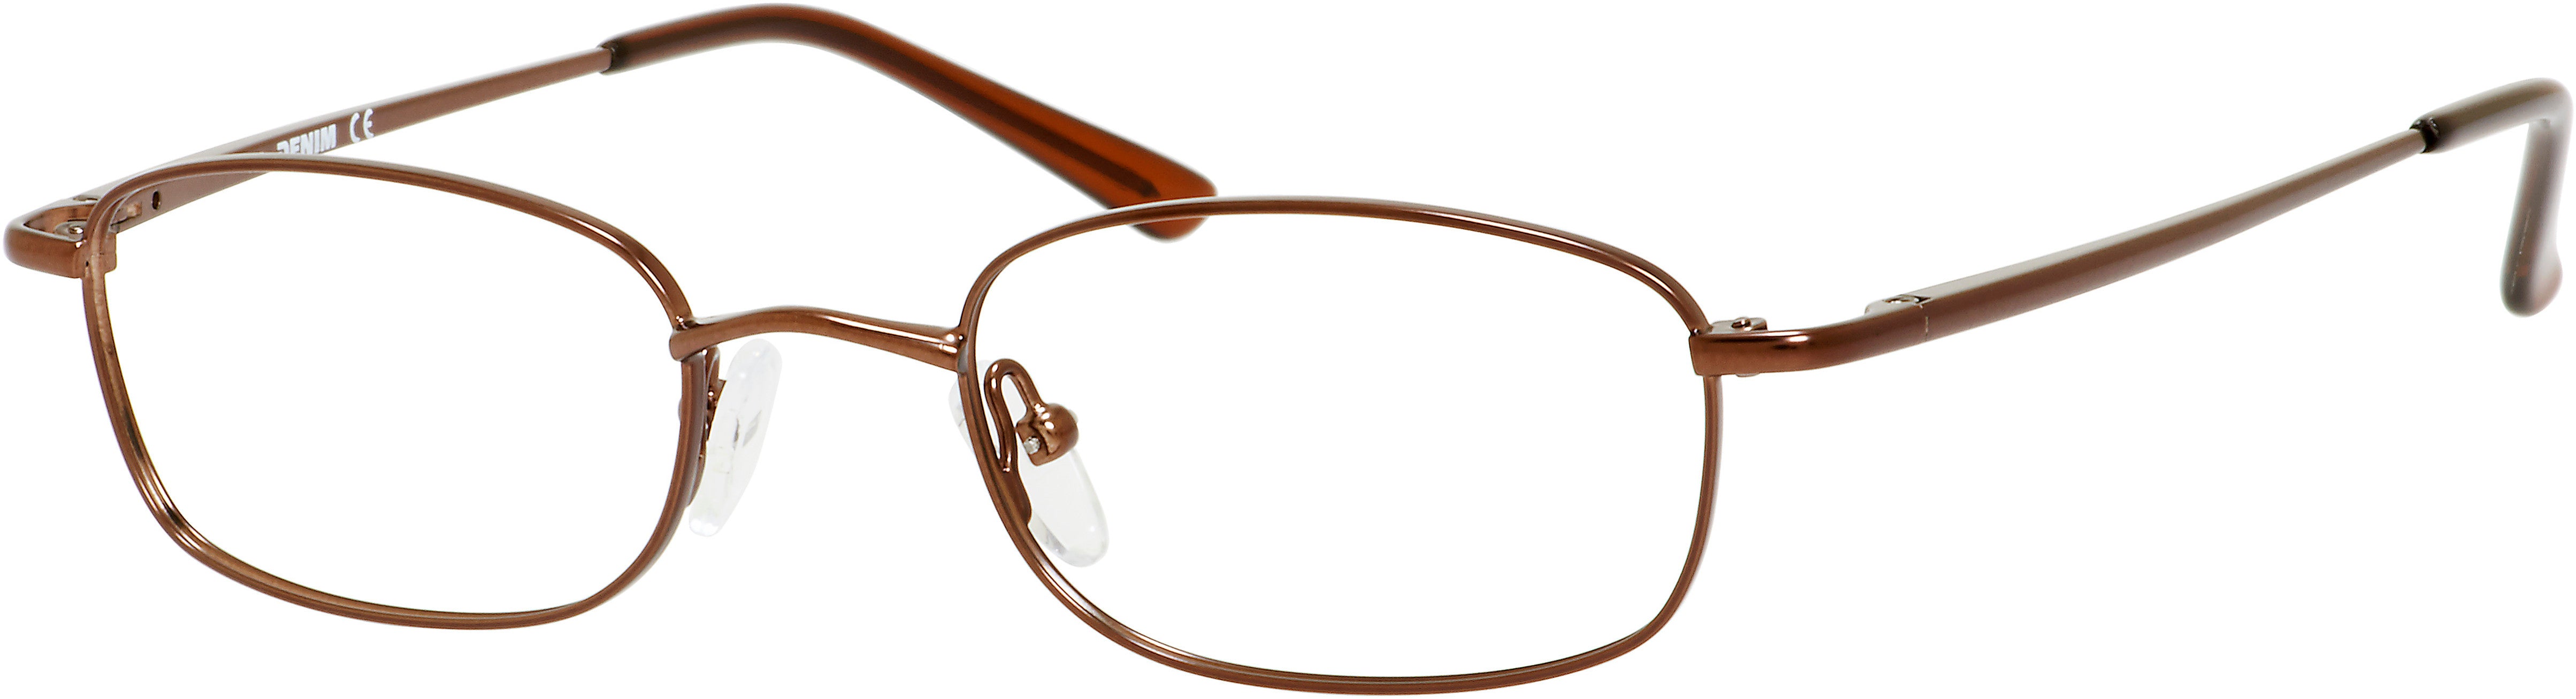  Denim 161 Rectangular Eyeglasses 0JDD-0JDD  Brown (00 Demo Lens)